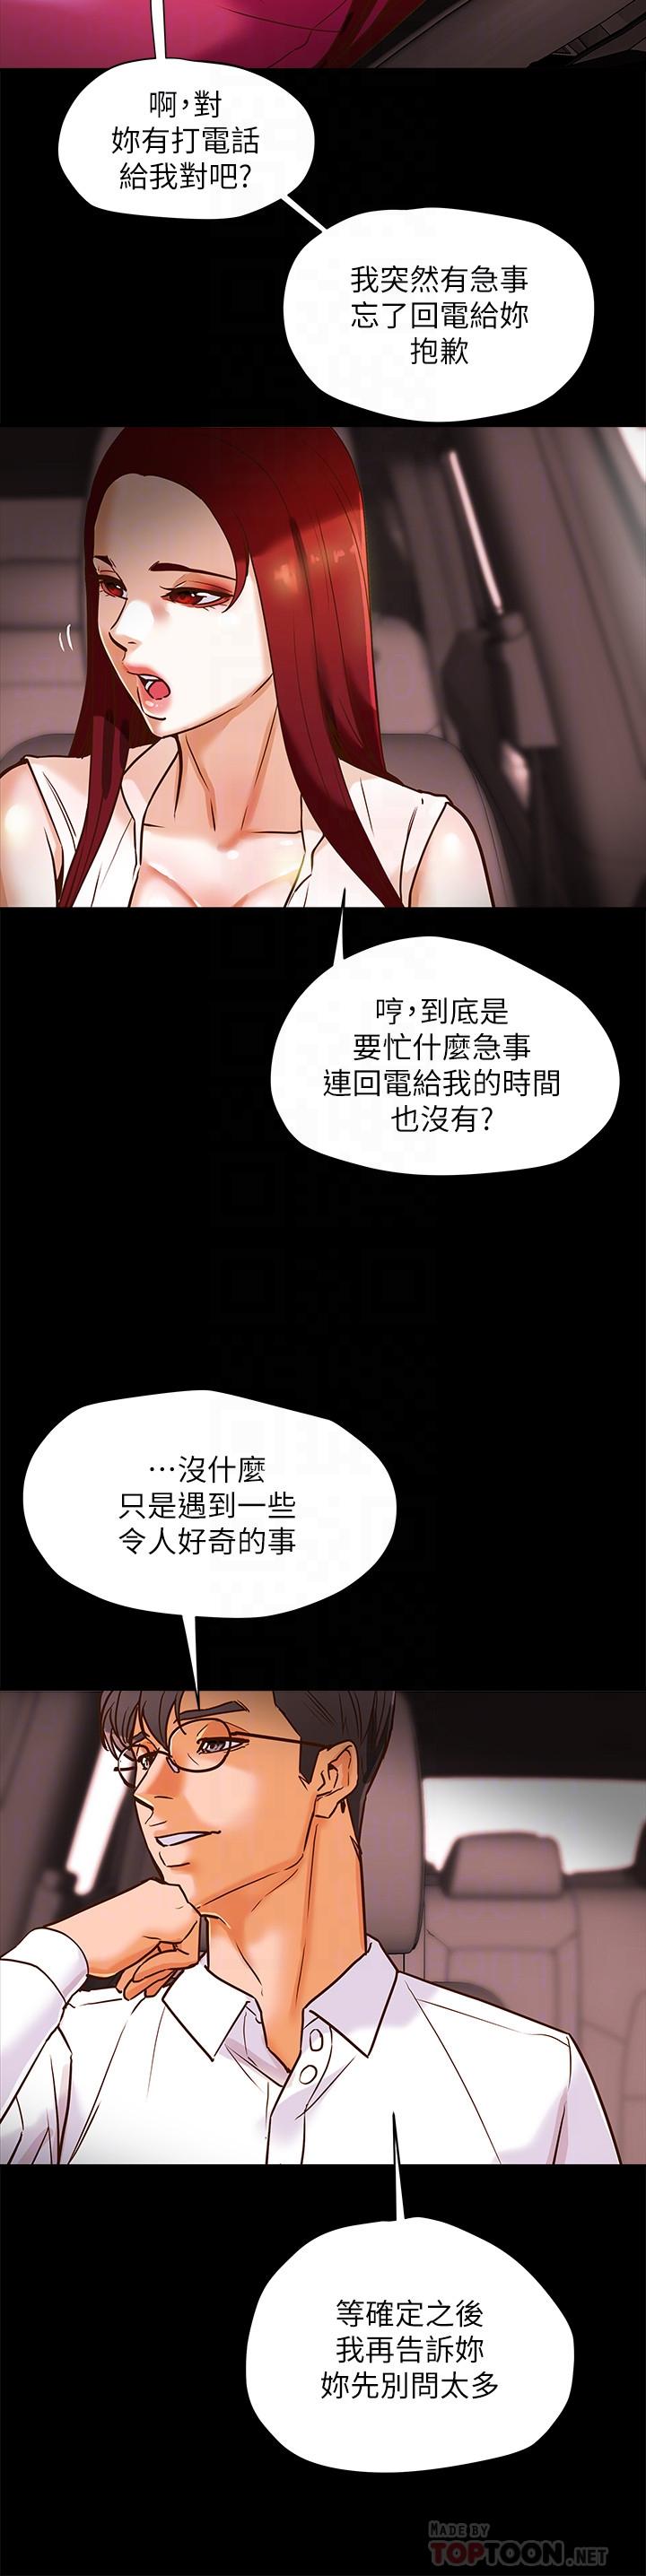 韩国污漫画 純情女攻略計劃 第5话-临停路边的刺激车震 12